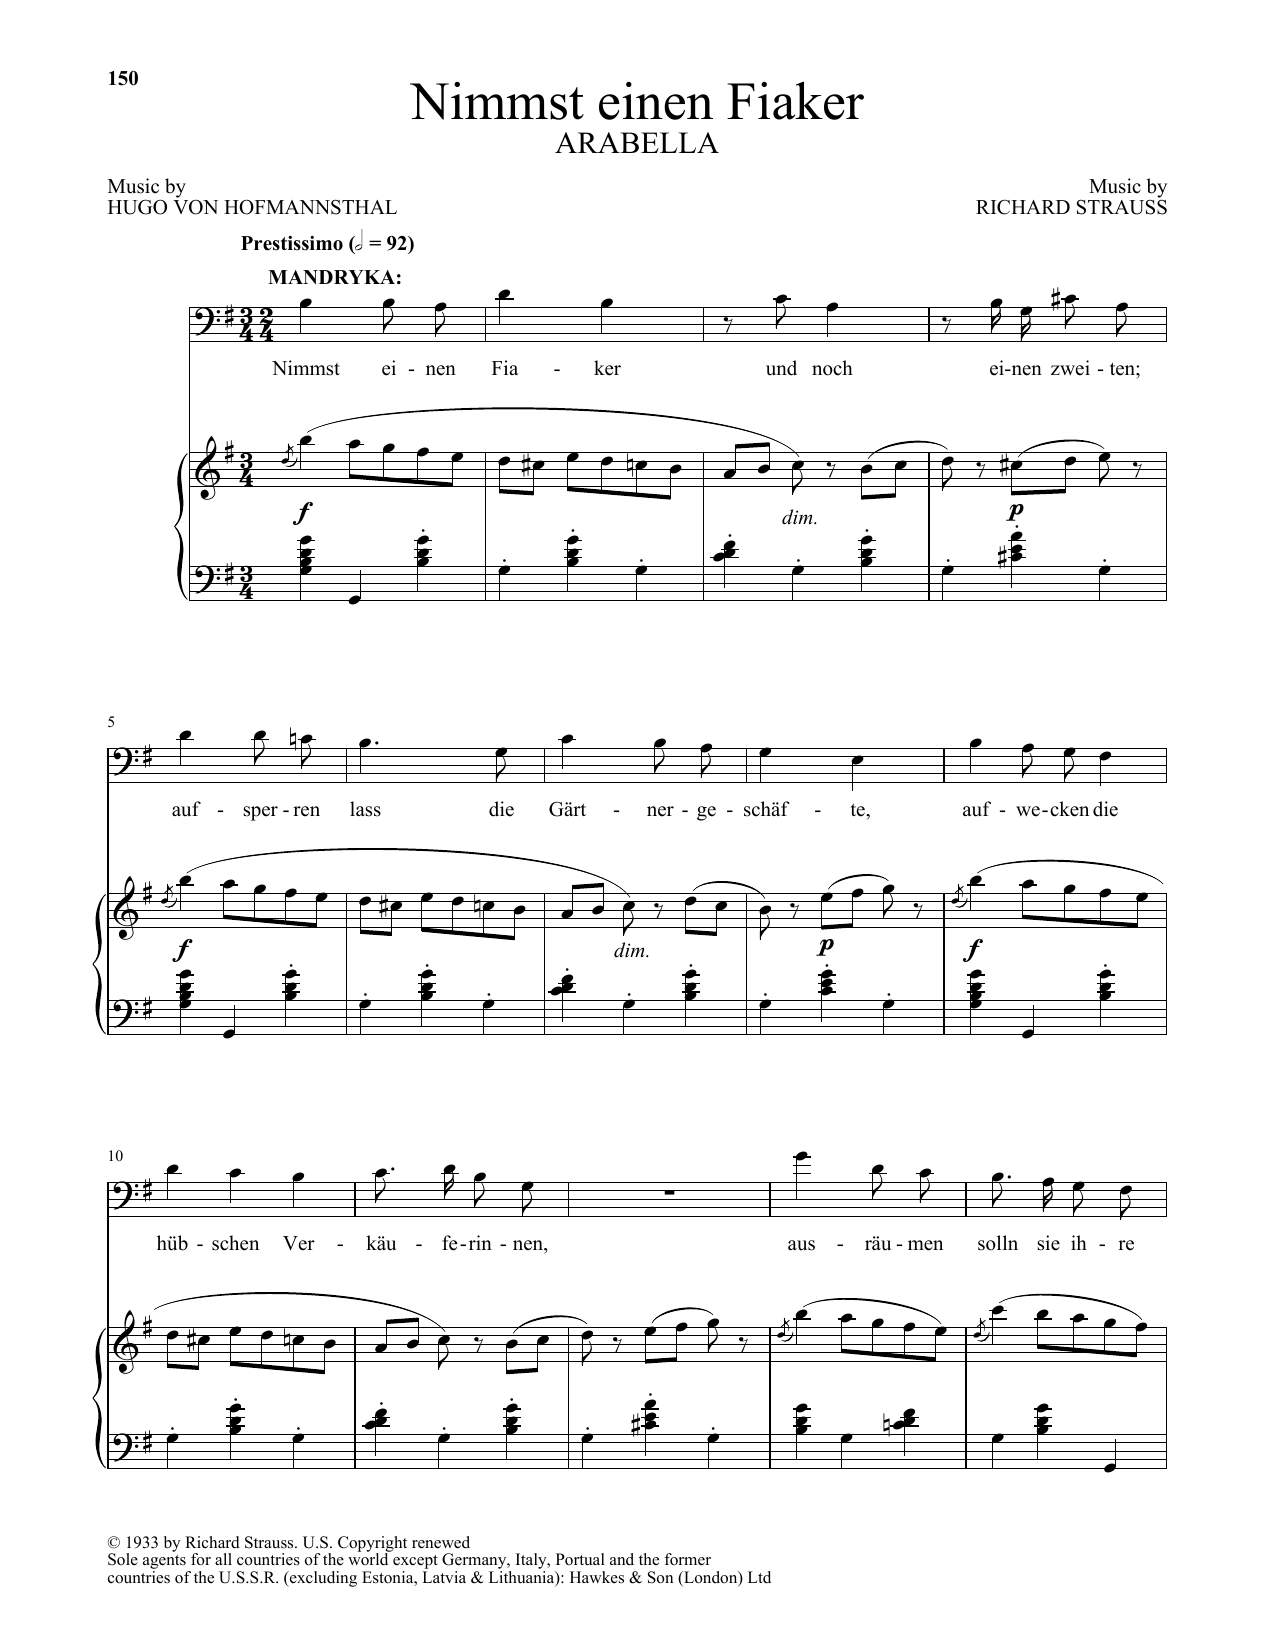 Download Richard Strauss Nimmst einen Fiaker (from Arabella) Sheet Music